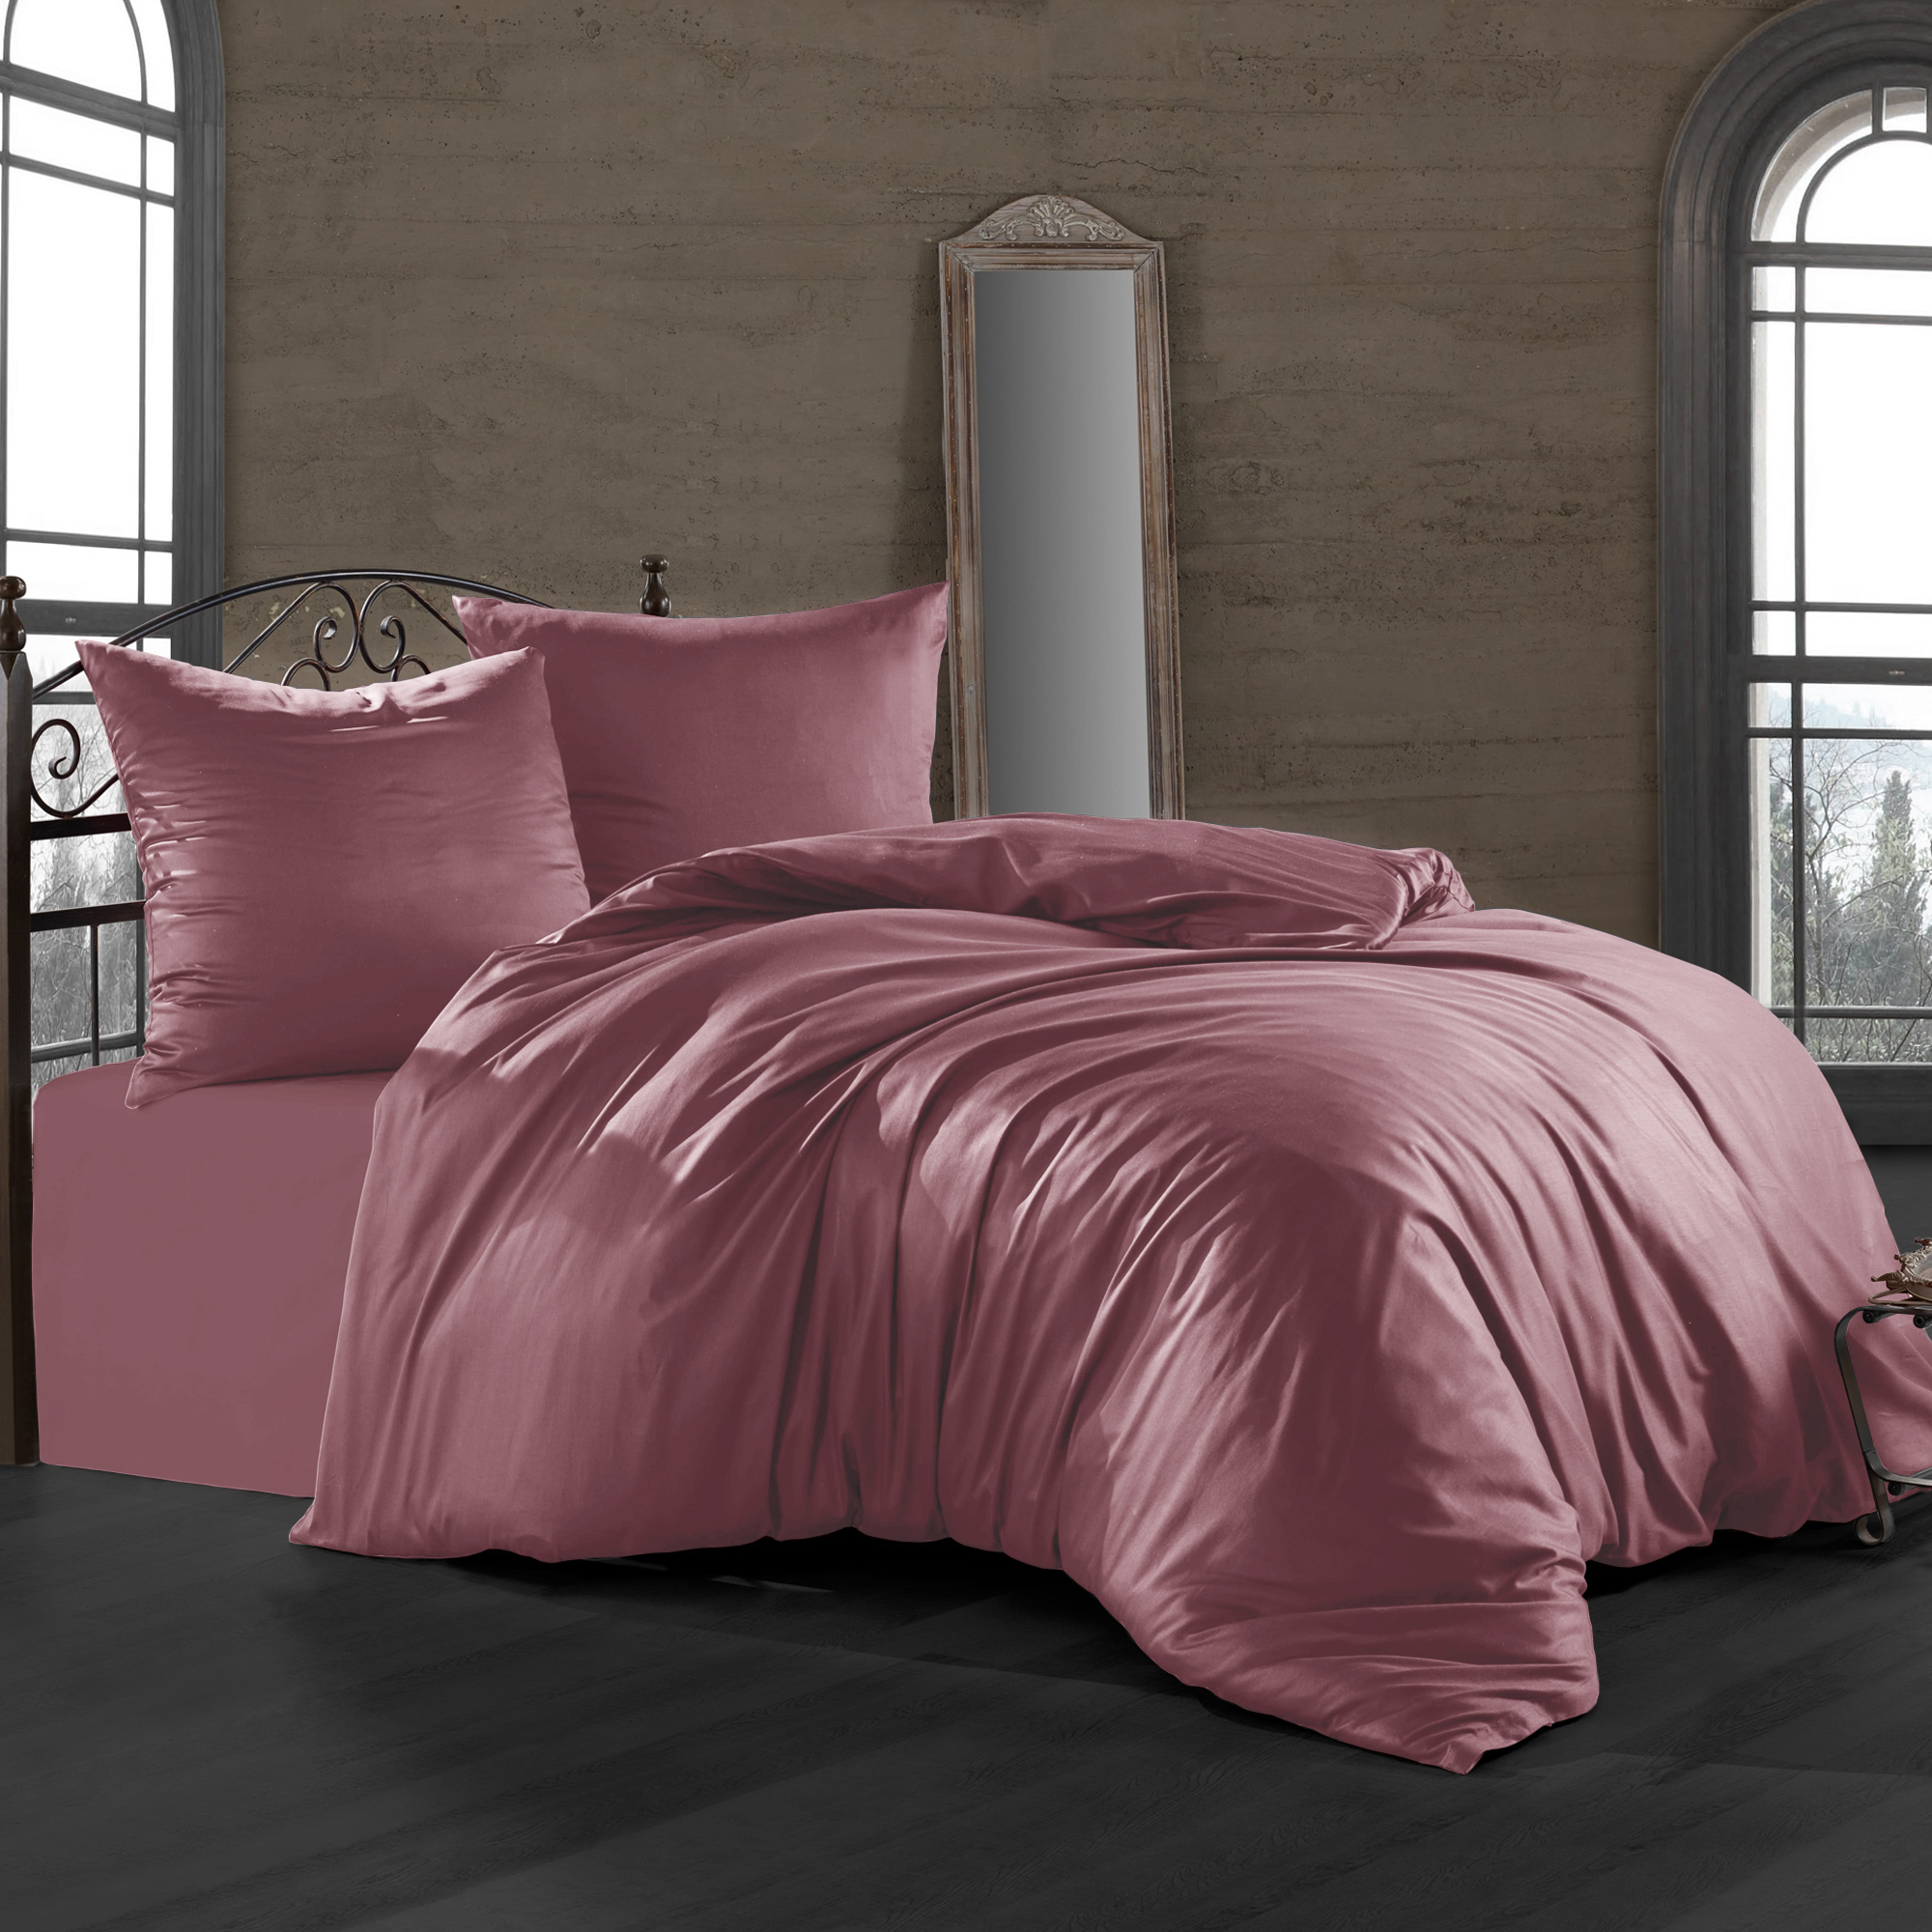 Комплект постельного белья Bahar пепельно-розовый Семейный/дуэт комплект постельного белья bahar синий семейный дуэт